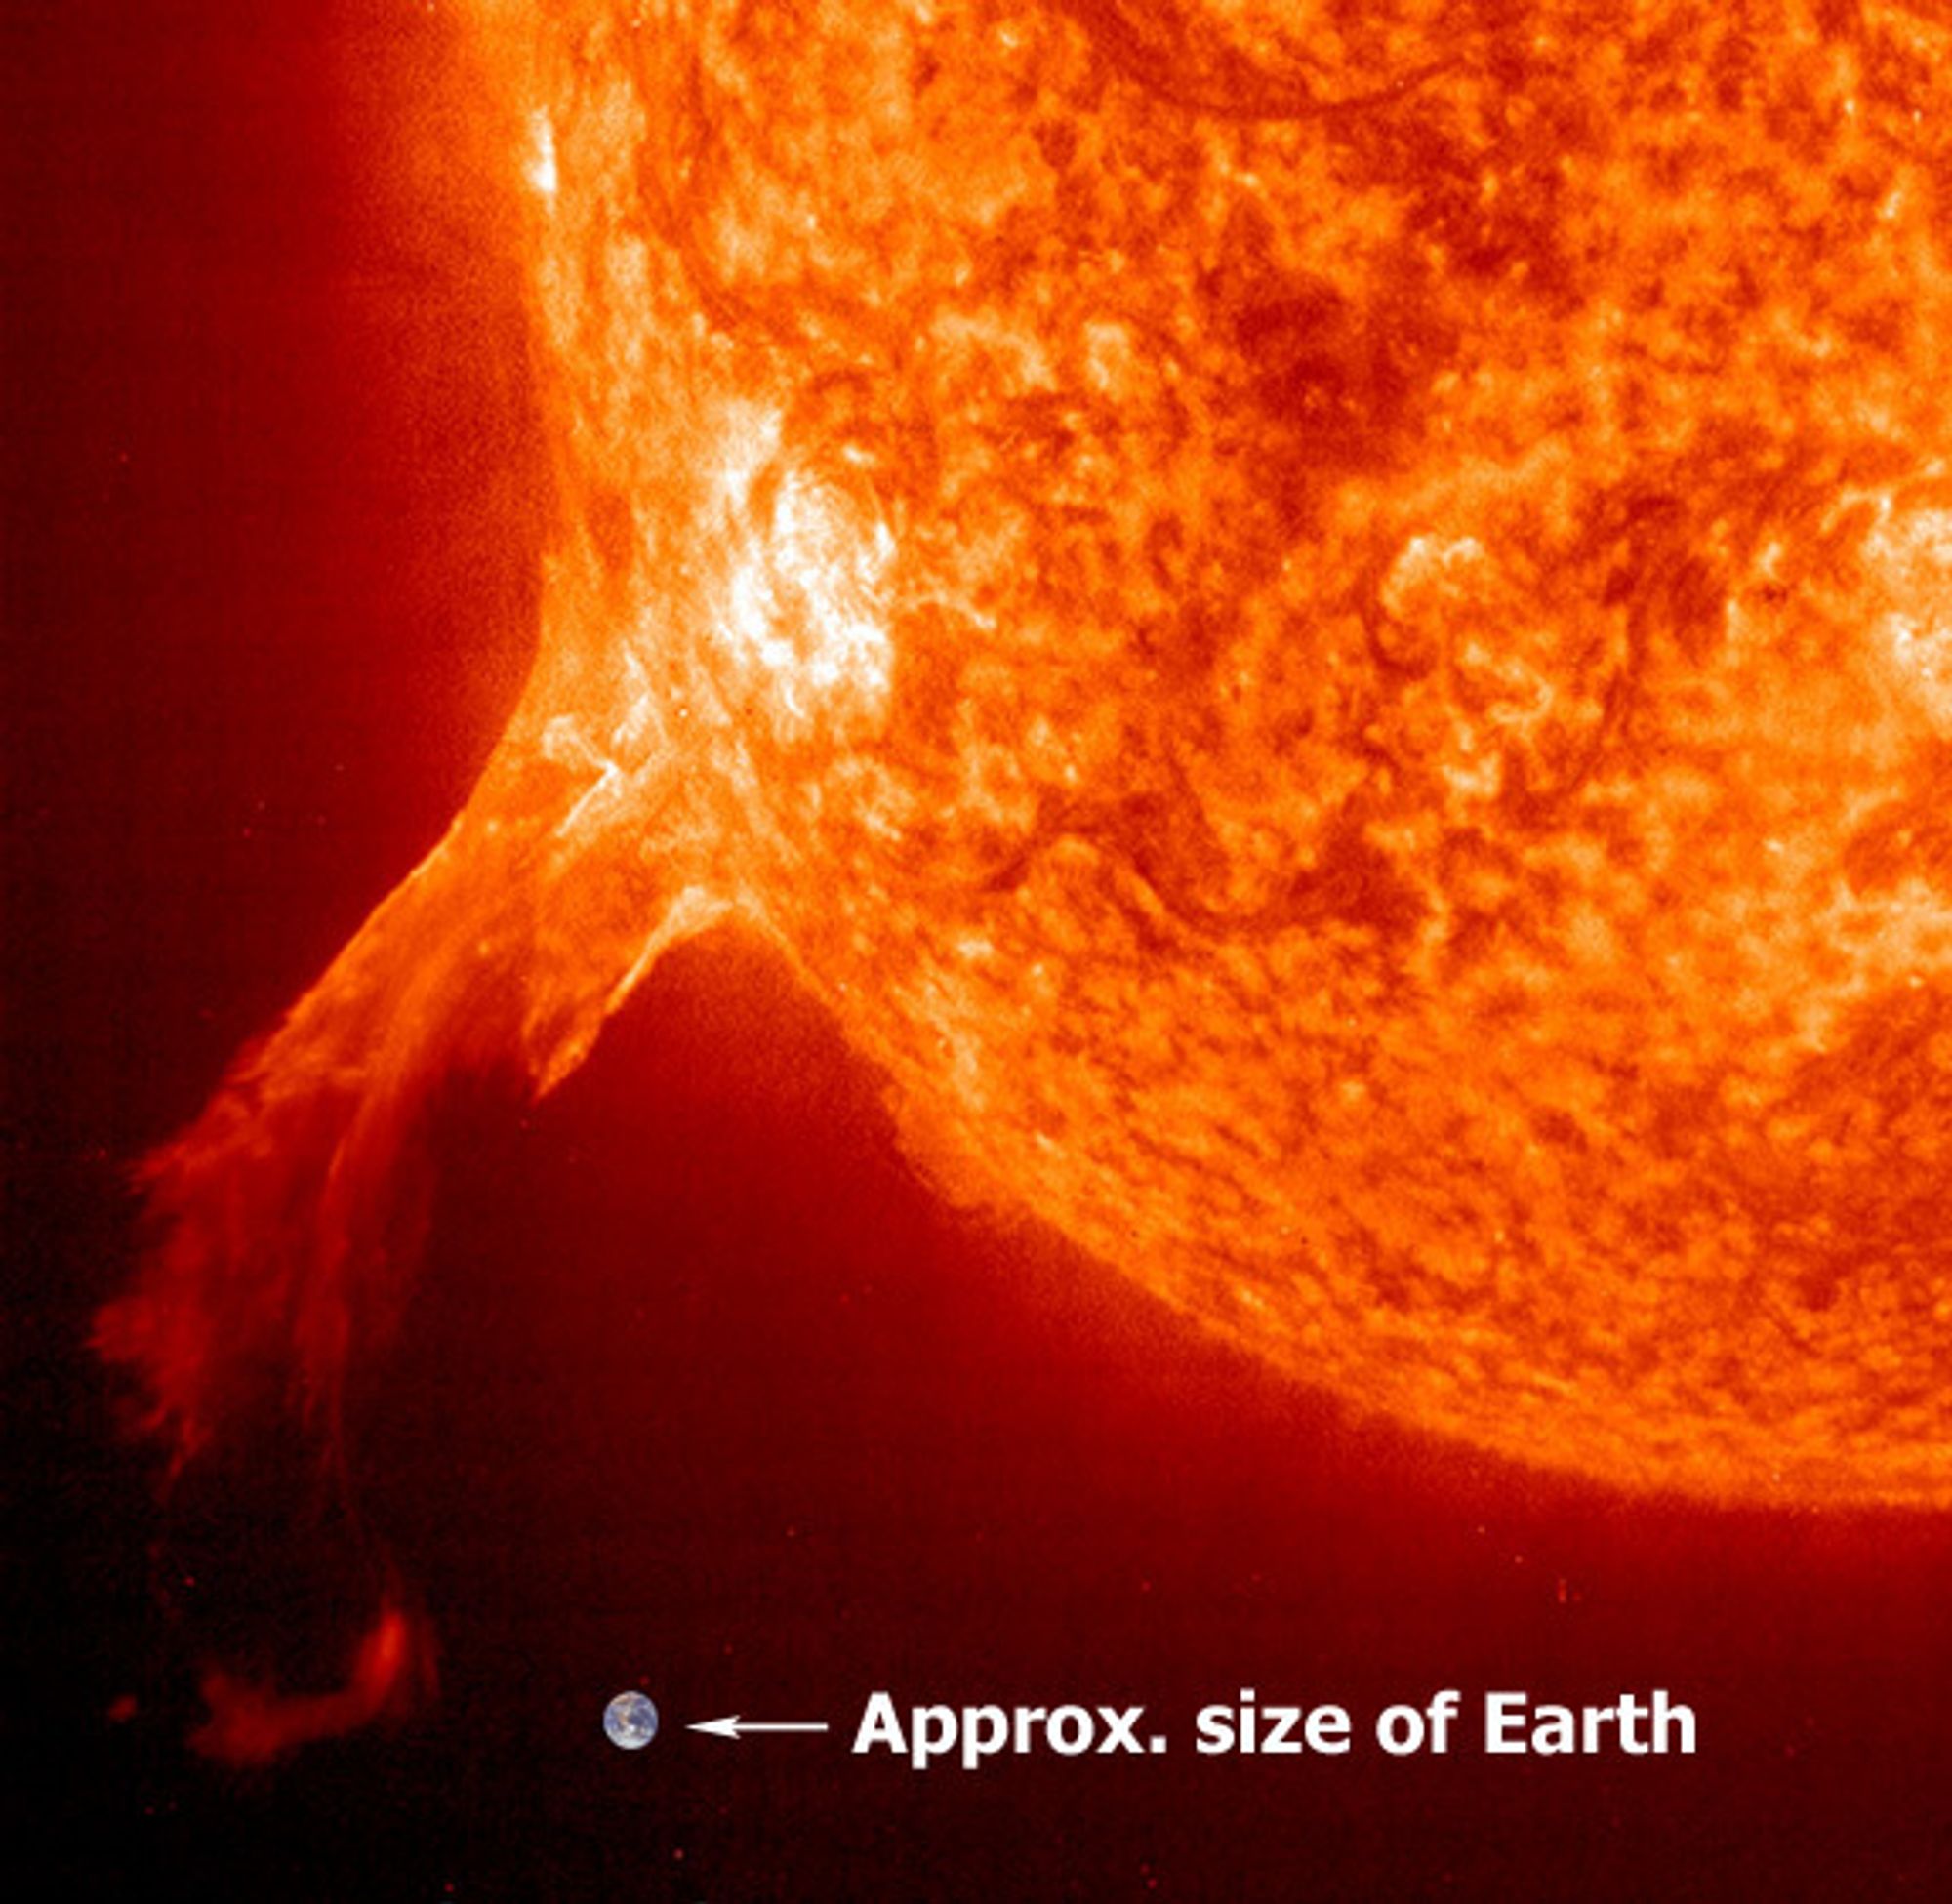 Solutblåsning: Massiv eksplosjon på sola som gir en enorm utblåsning som er mange ganger større enn jorda. Jorda montert inn for sammenlikningens skyld.